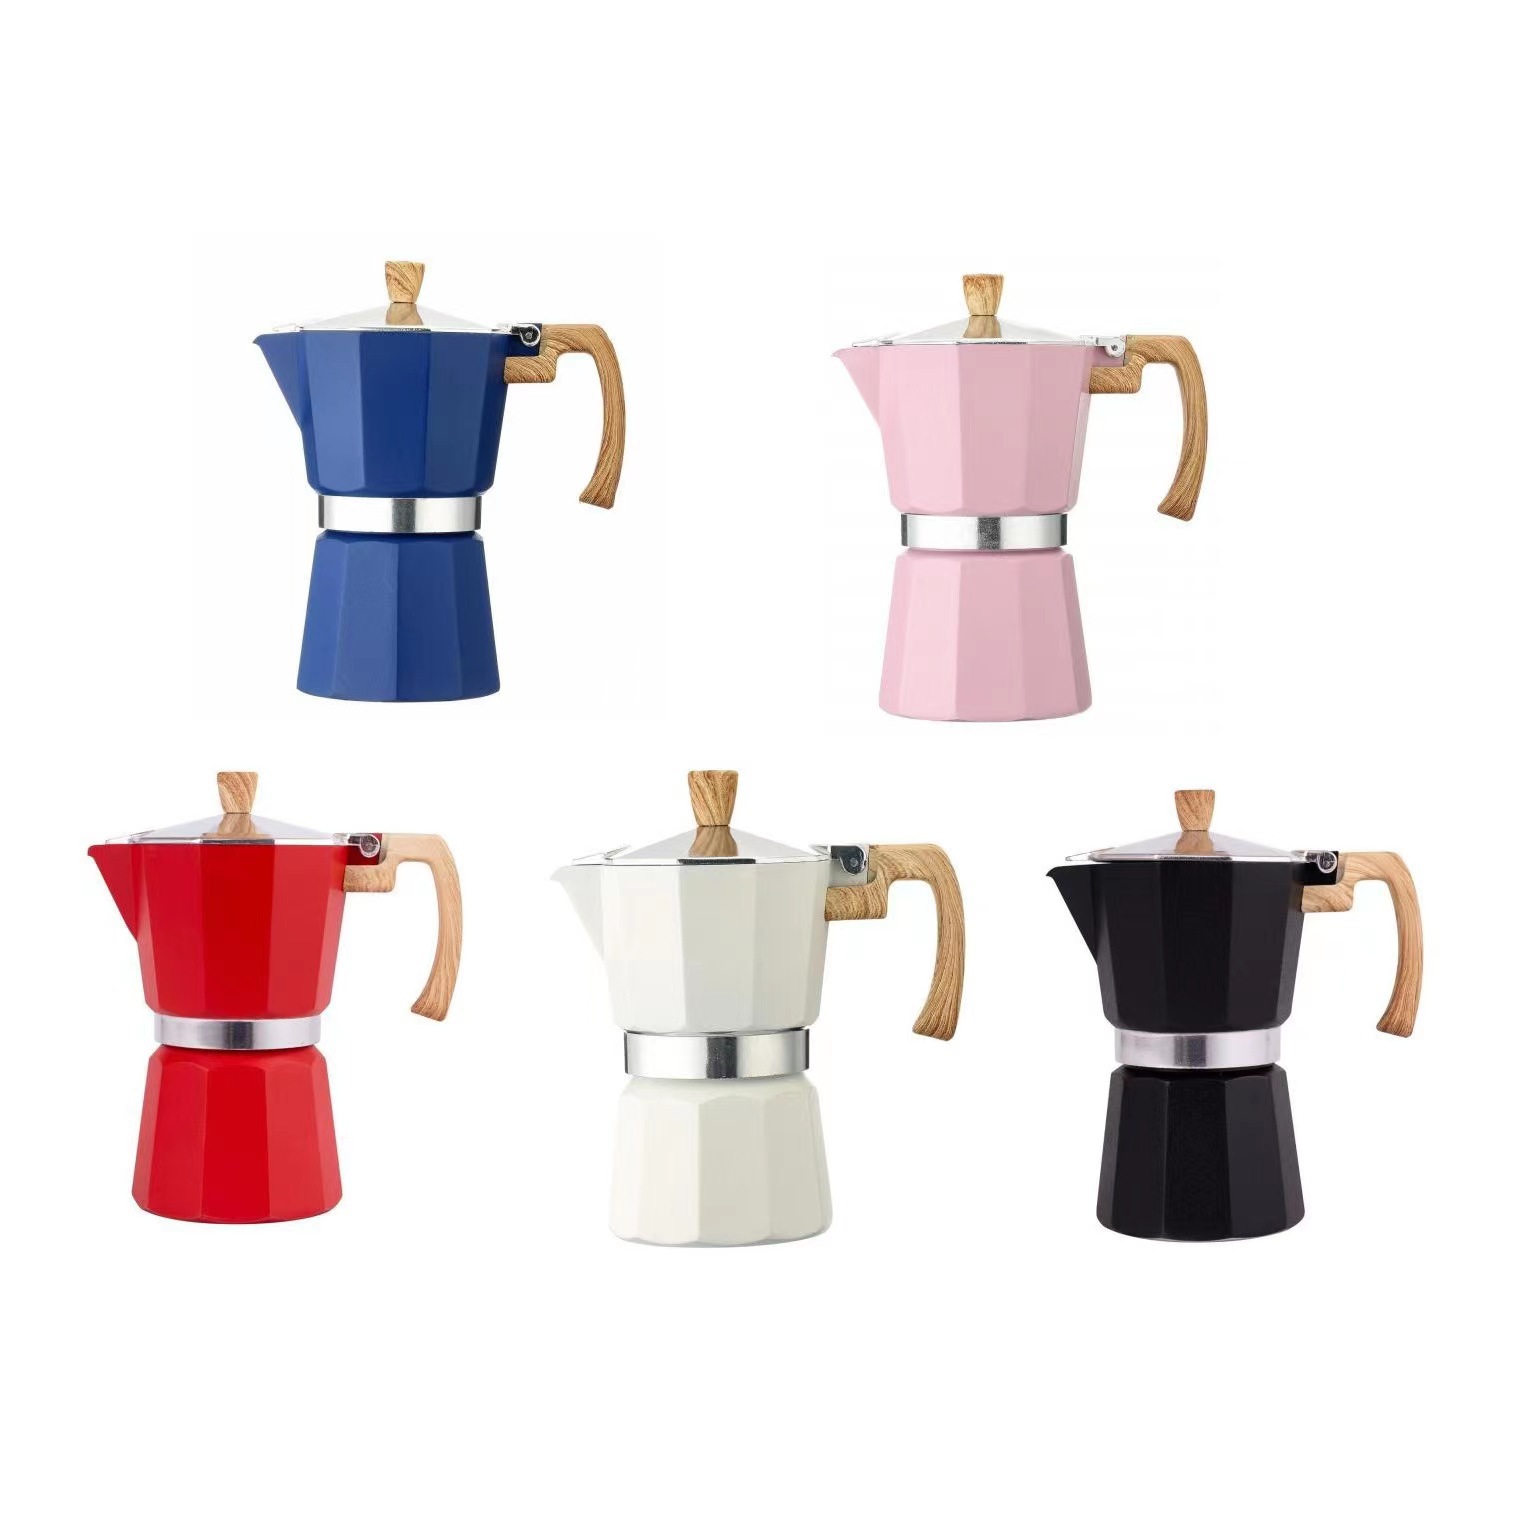 摩卡壶家用意式摩卡咖啡壶煮咖啡机手冲浓缩咖啡萃取壶